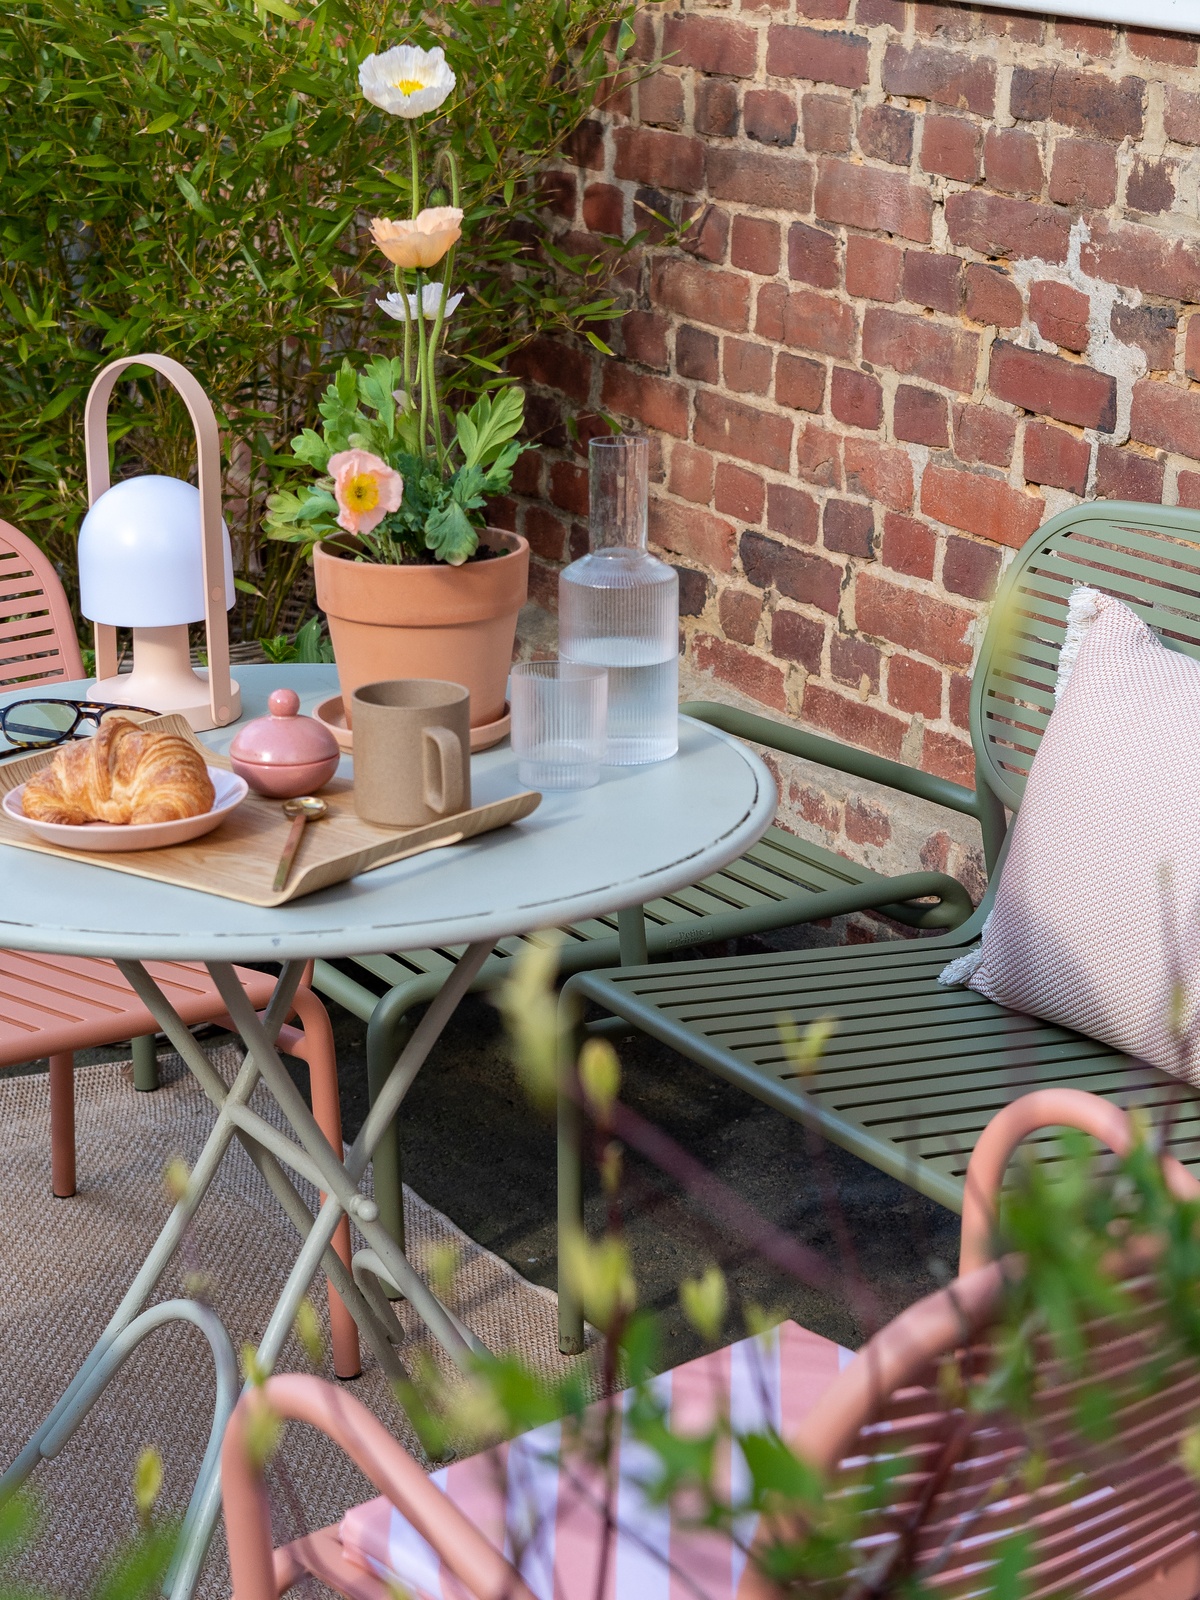 Sitzgruppe im Garten, auf dem Tisch steht ein Blumentopf mit Islandmohn, eine tragbare Leuchte, eine Wasserkaraffe und ein kleines Tablett mit Croissant und Tasse